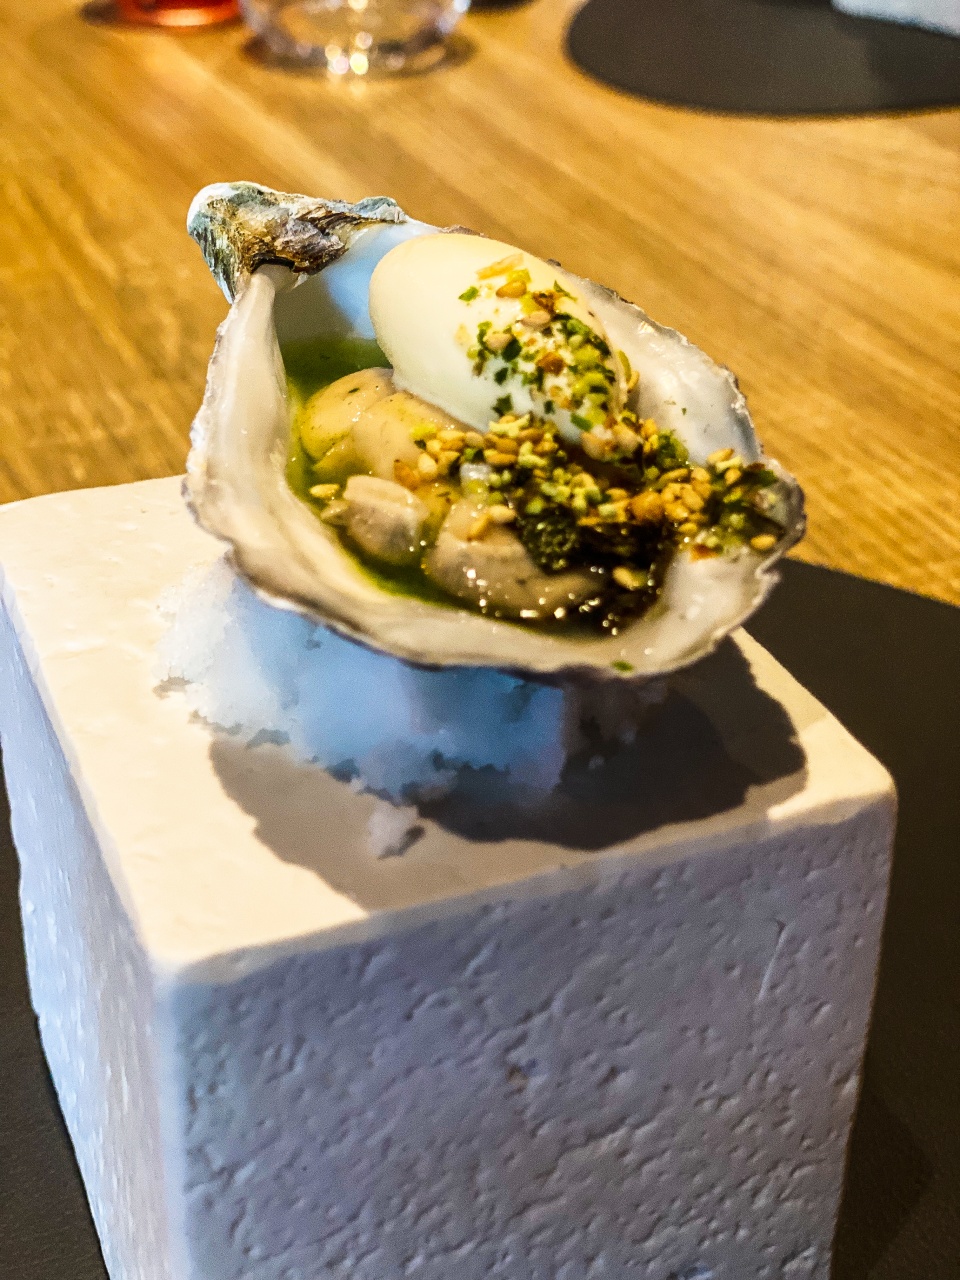 Verfijnde gillardeau oester op een bedje van ijs, gepresenteerd op een stijlvol bord, kenmerkend voor de culinaire innovatie bij Restaurant Zappaz in Leuven